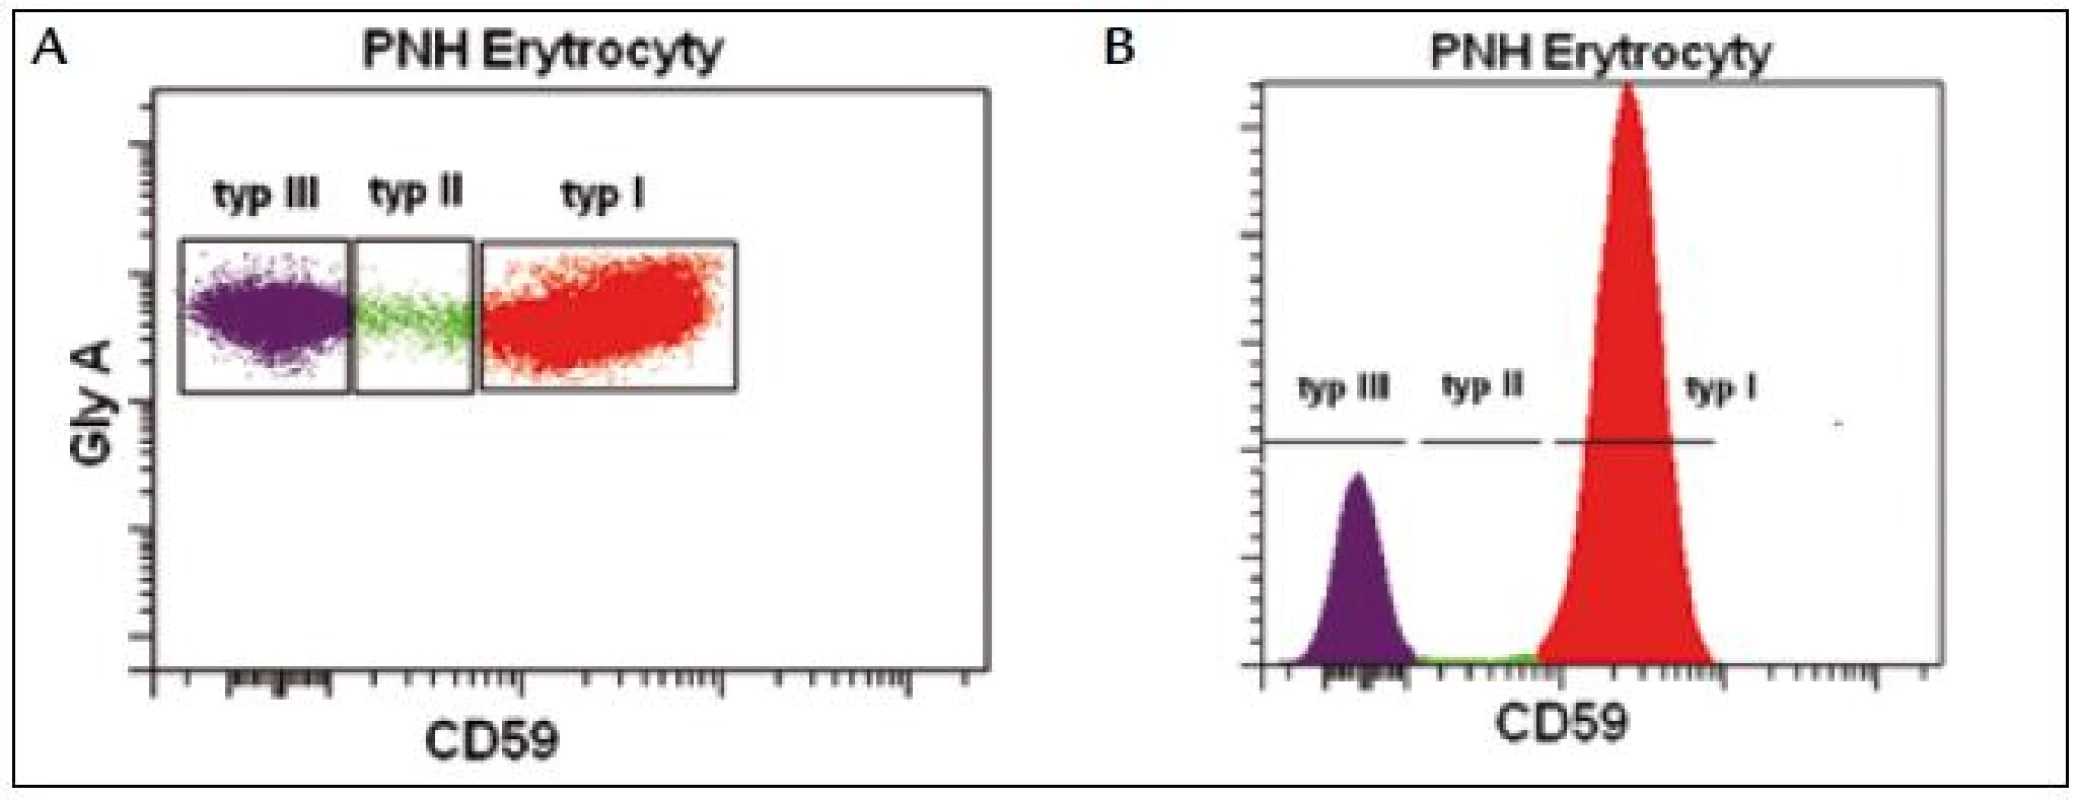 PNH erytrocyty s kompletním deficitem GPI kotveného proteinu CD59 (typ III), PNH erytrocyty s částečným deficitem (typ II) a normální erytrocyty (typ I).